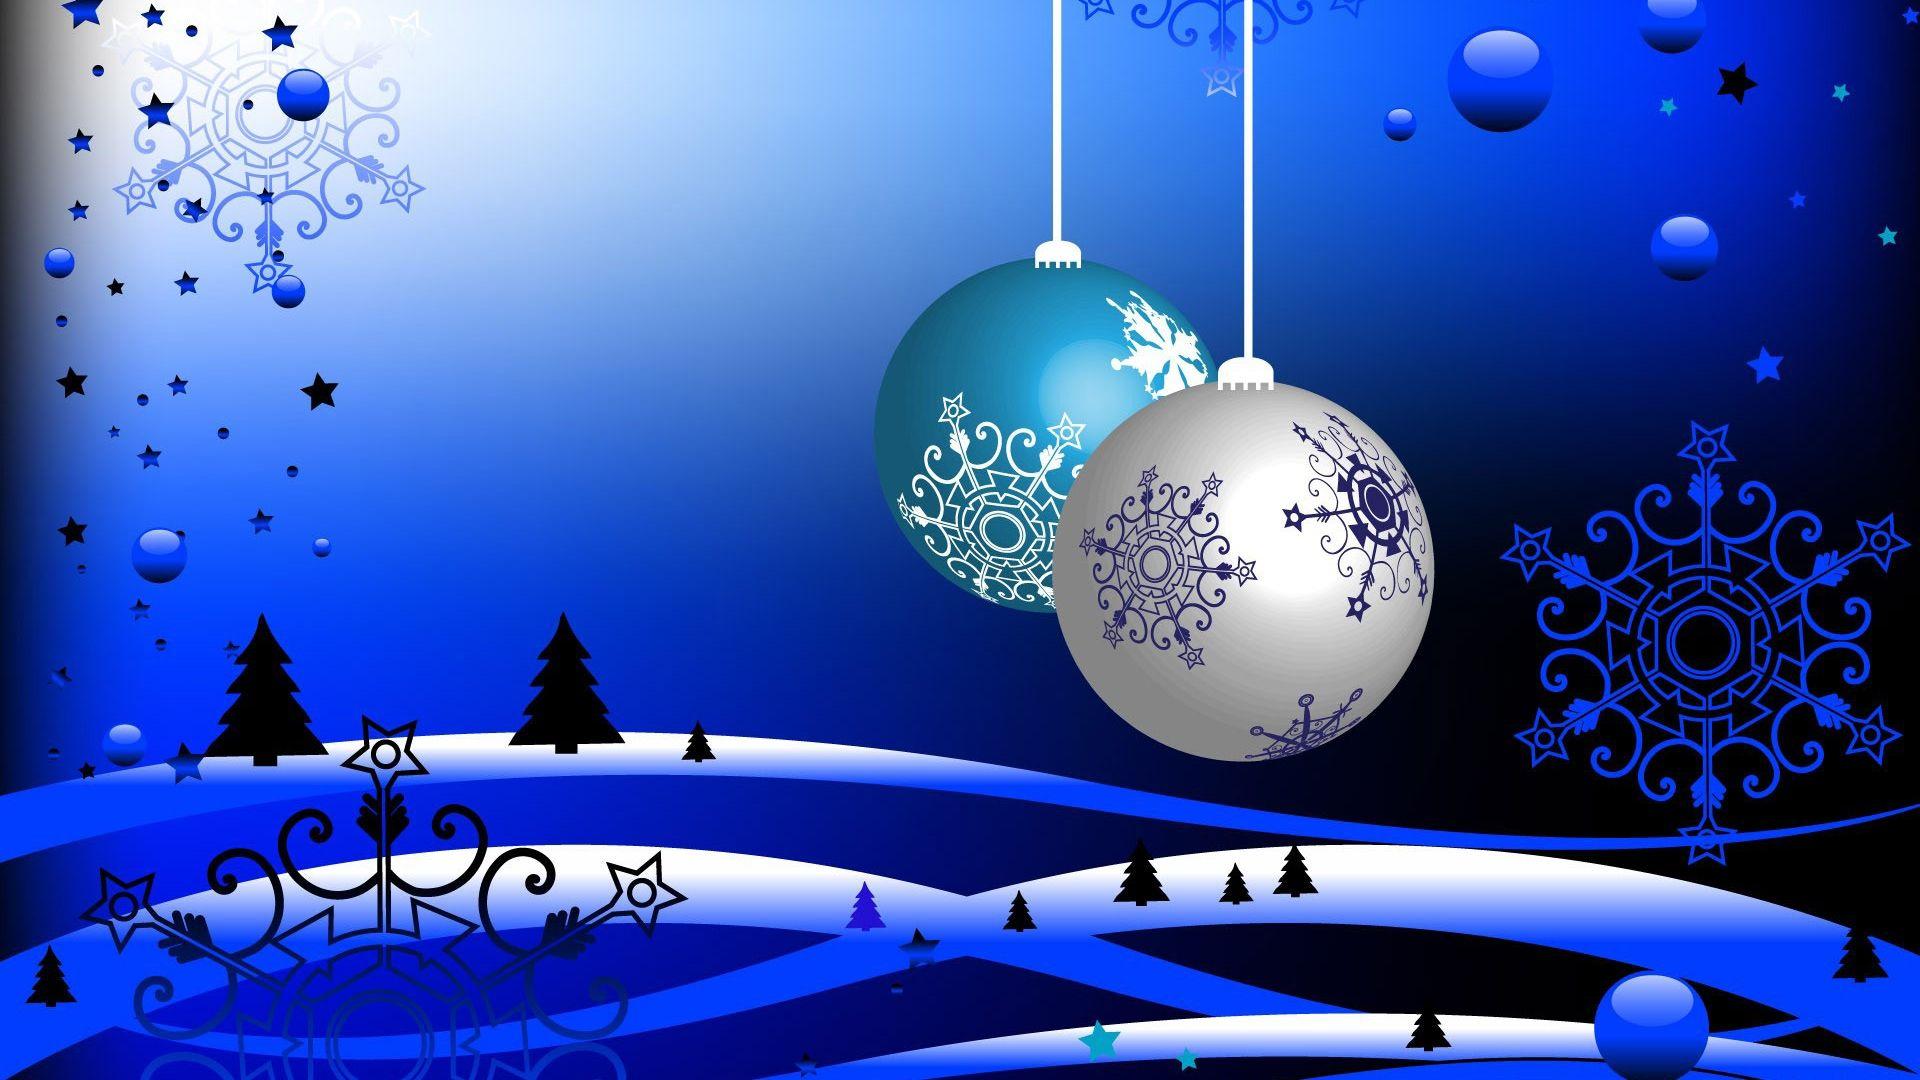 Free Animated Christmas Wallpaper for Desktop. Christmas